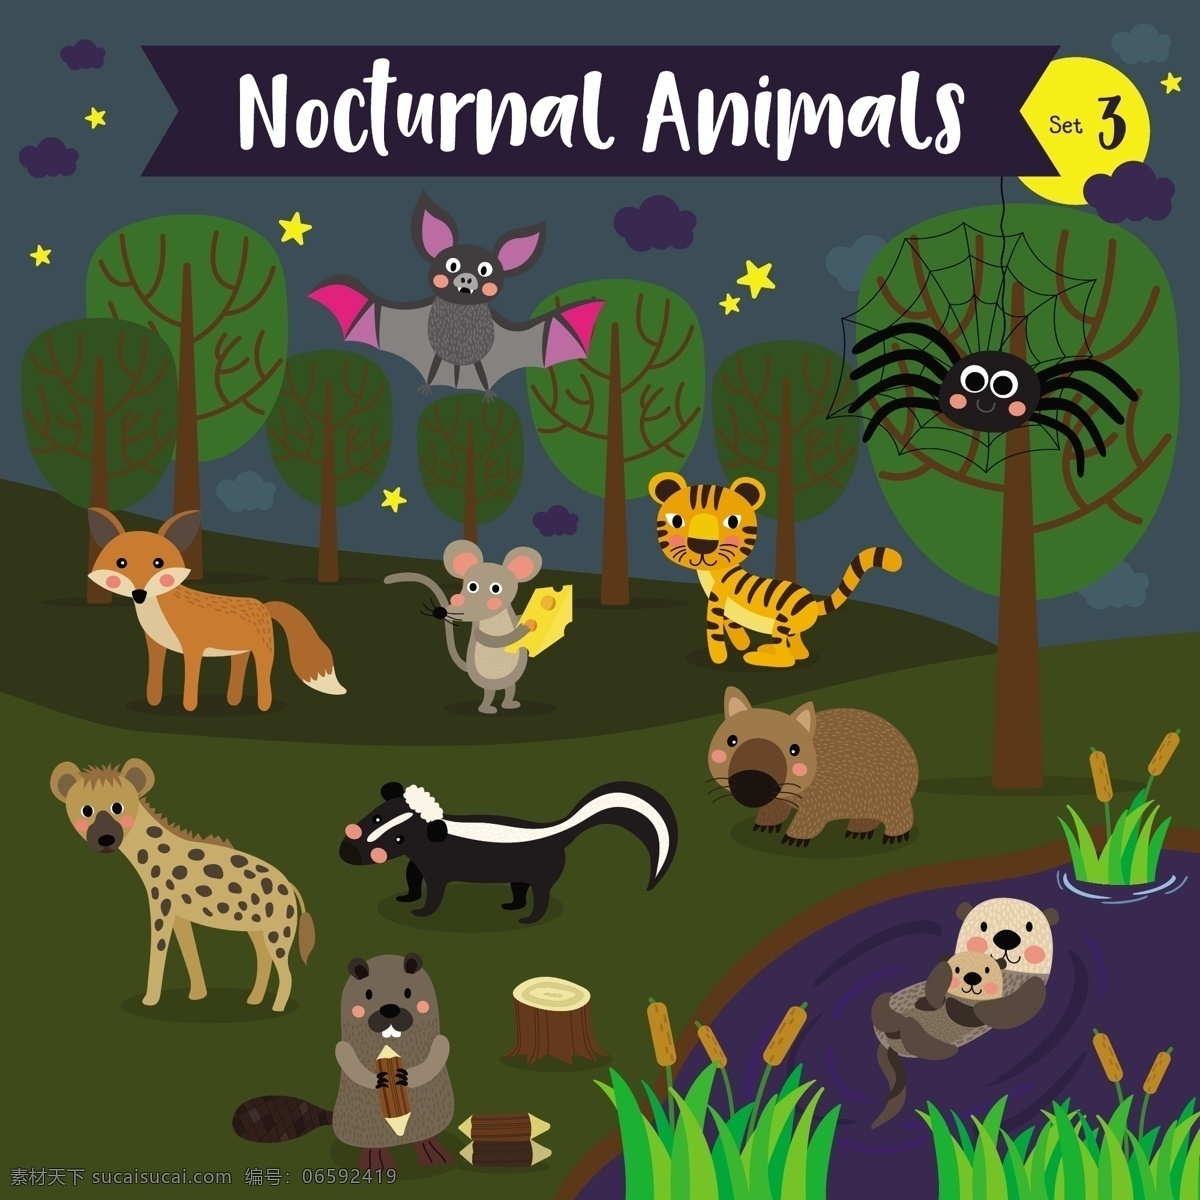 世界各地 野生动物 卡通 形象 矢量 夜晚 行动 动物 豹子 护理 野狗 老虎 森林 小动物 插画